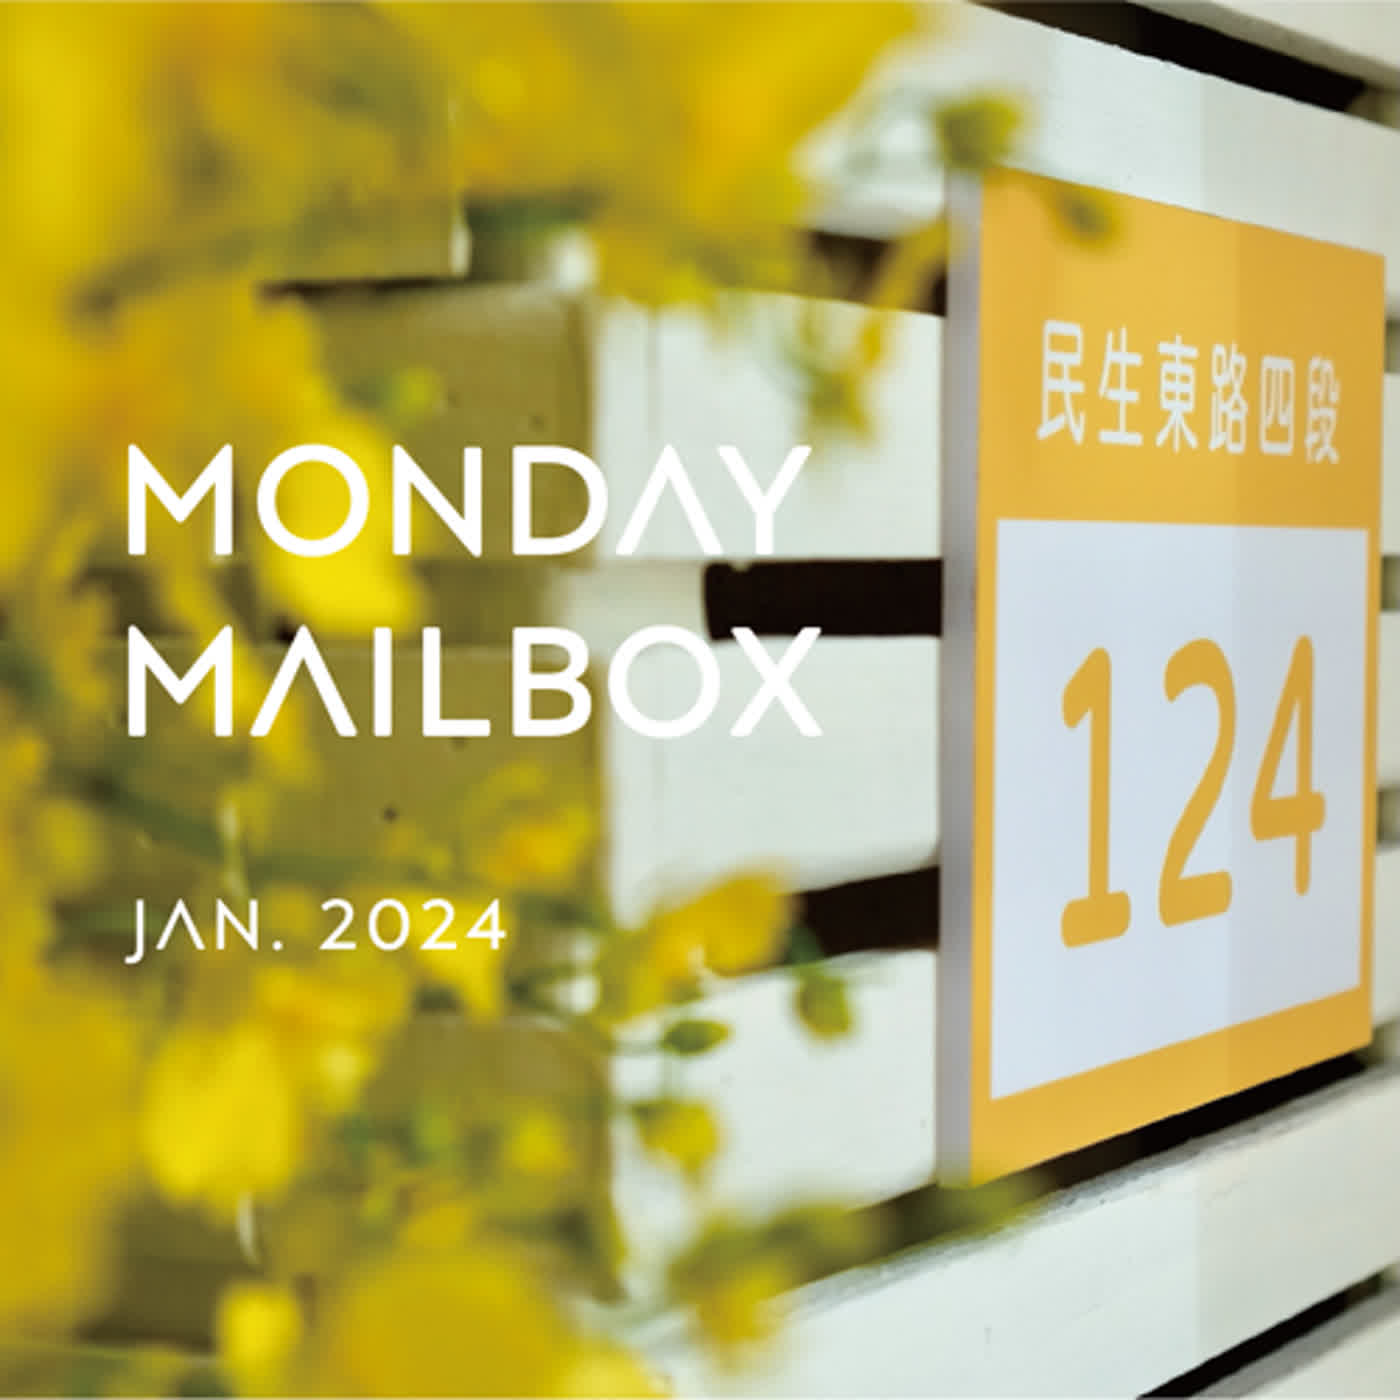 EP114『Monday Mailbox』一月份和客人發生的可愛日常！